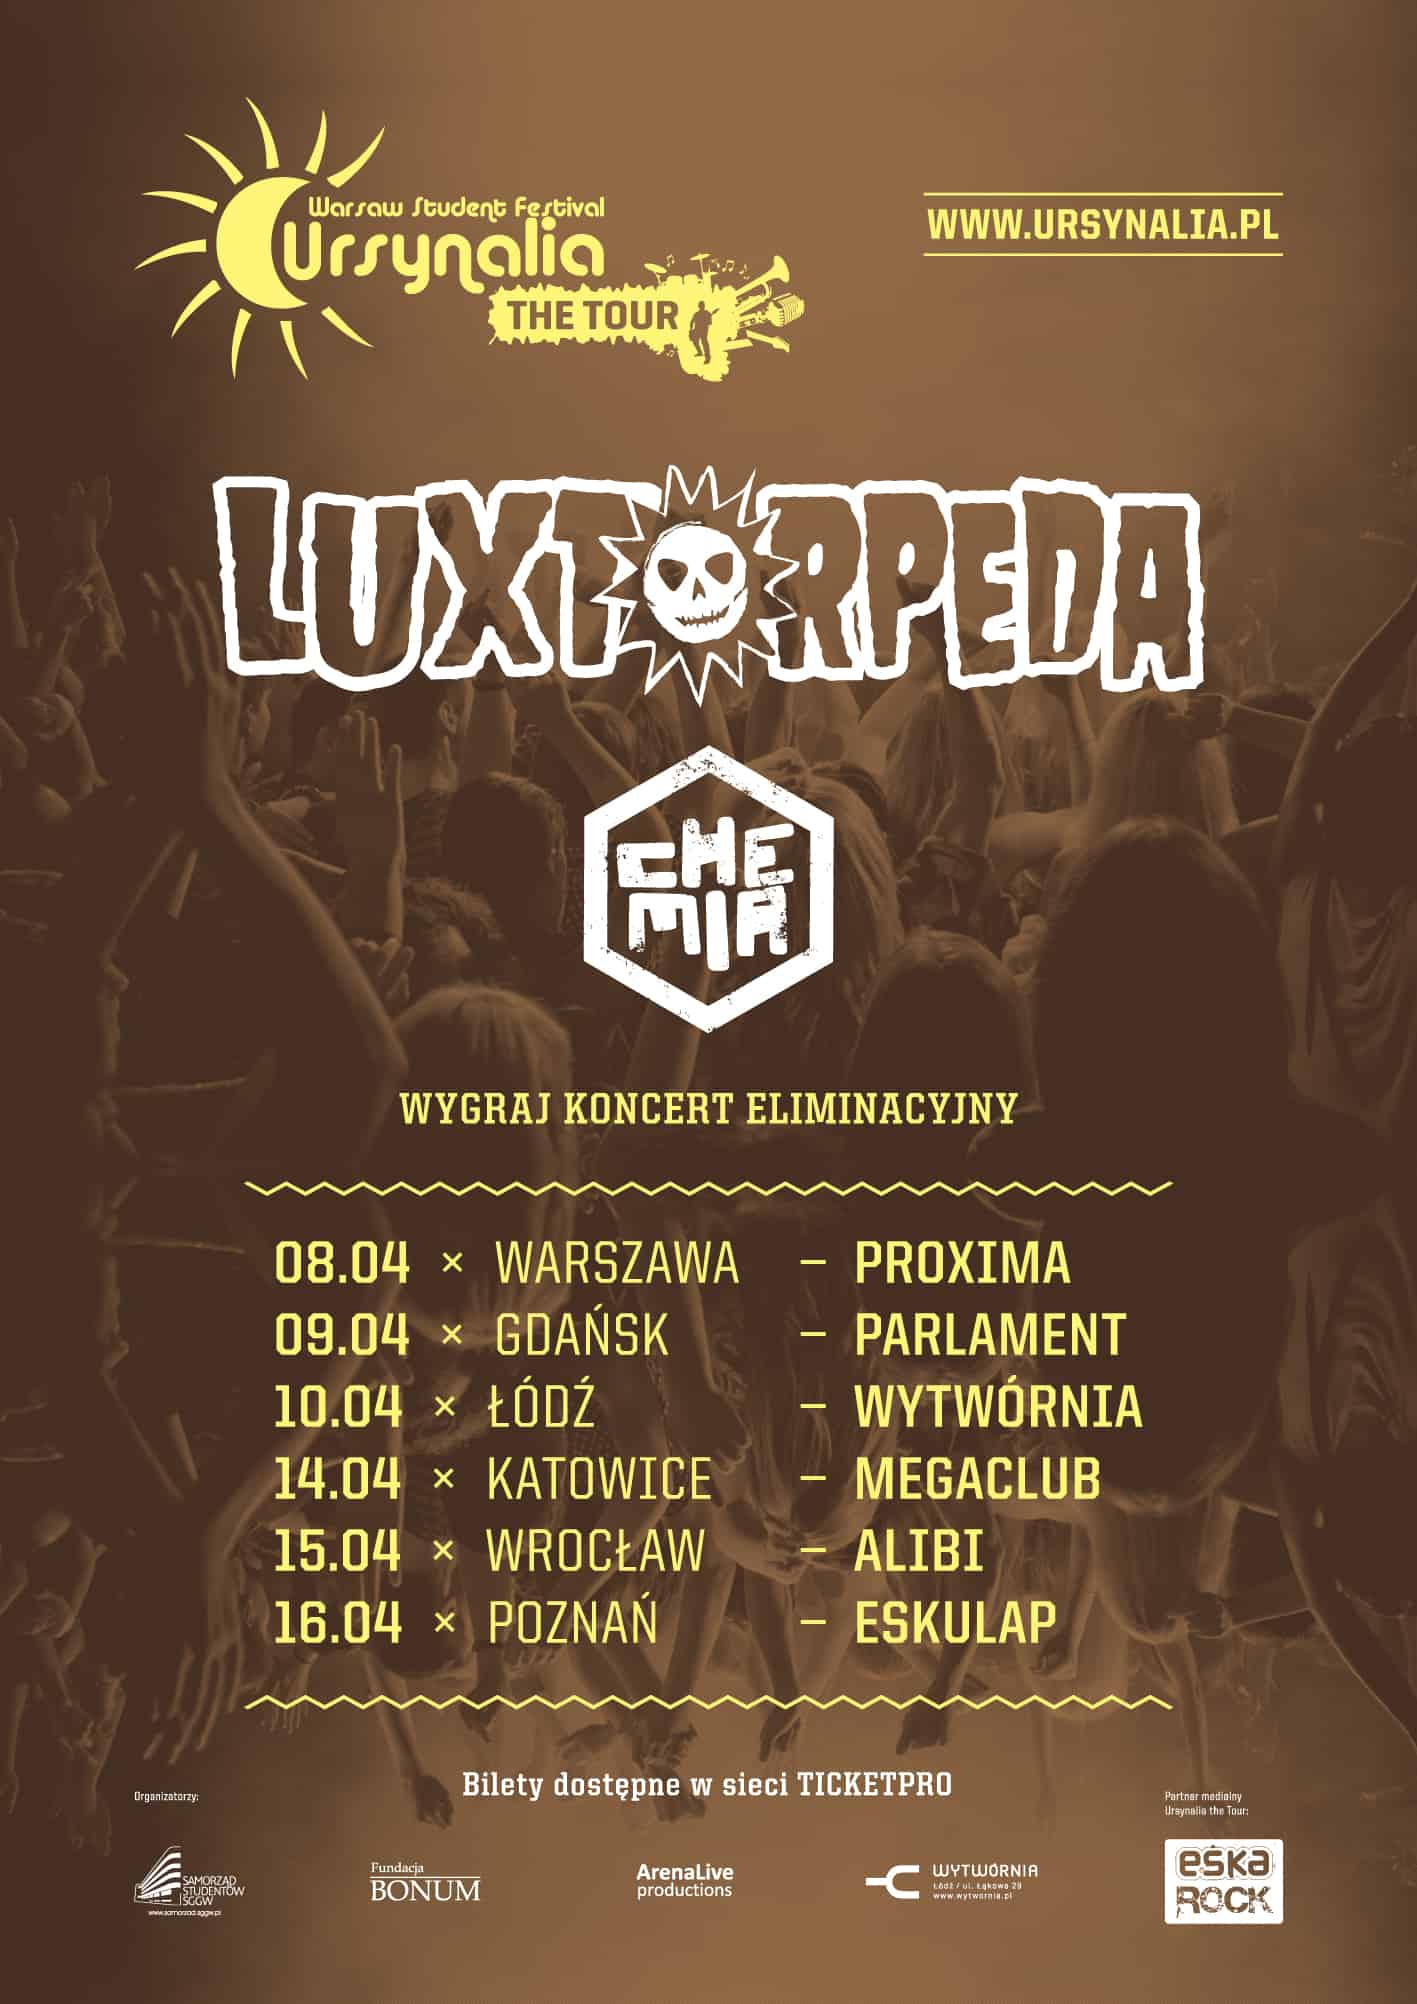 Ursynalia The Tour 2013 - Katowice, Wrocław, Poznań z Luxtorpedą i Chemią!